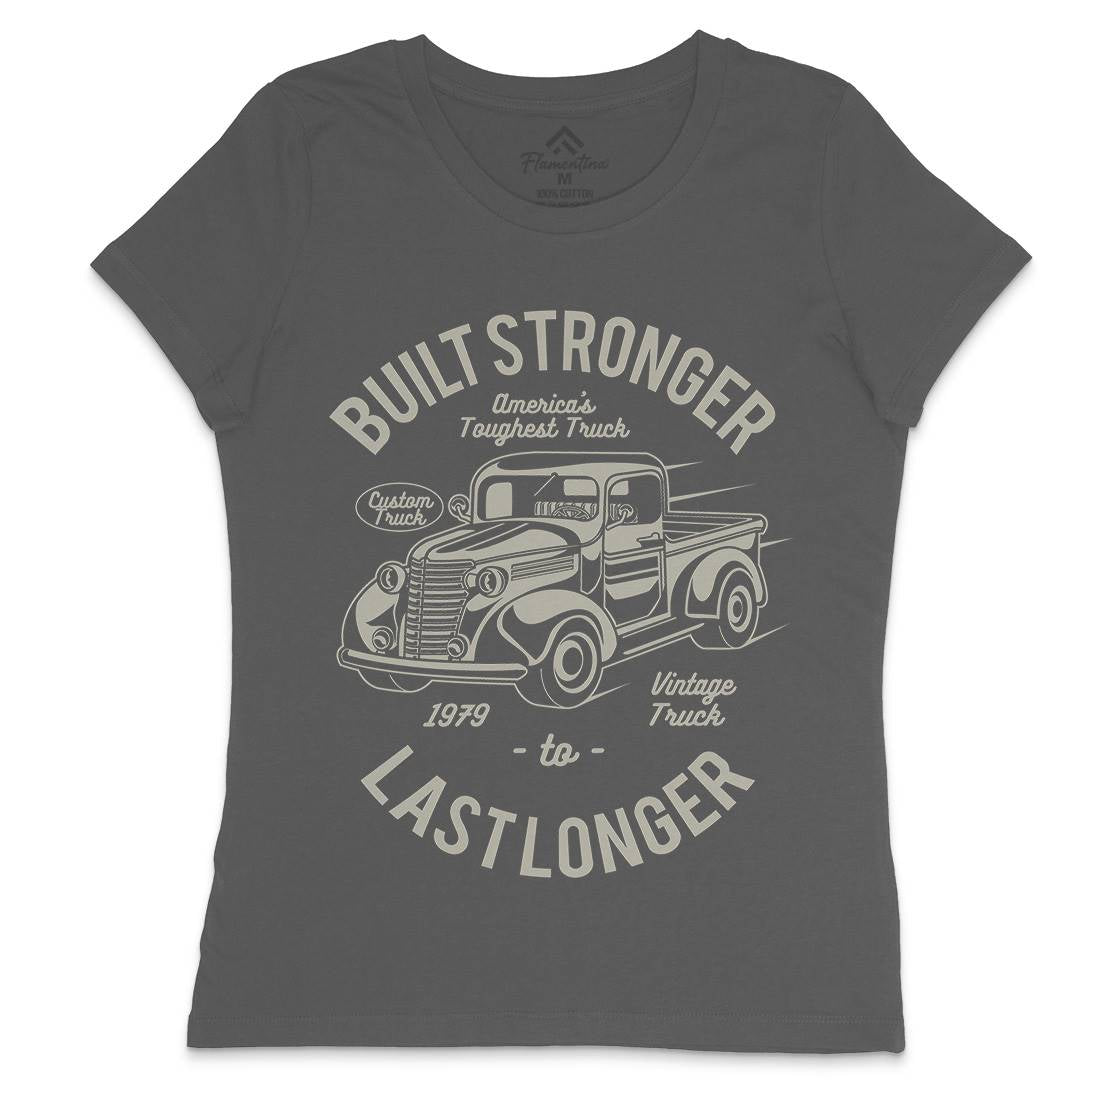 Built Stronger Womens Crew Neck T-Shirt Cars A023